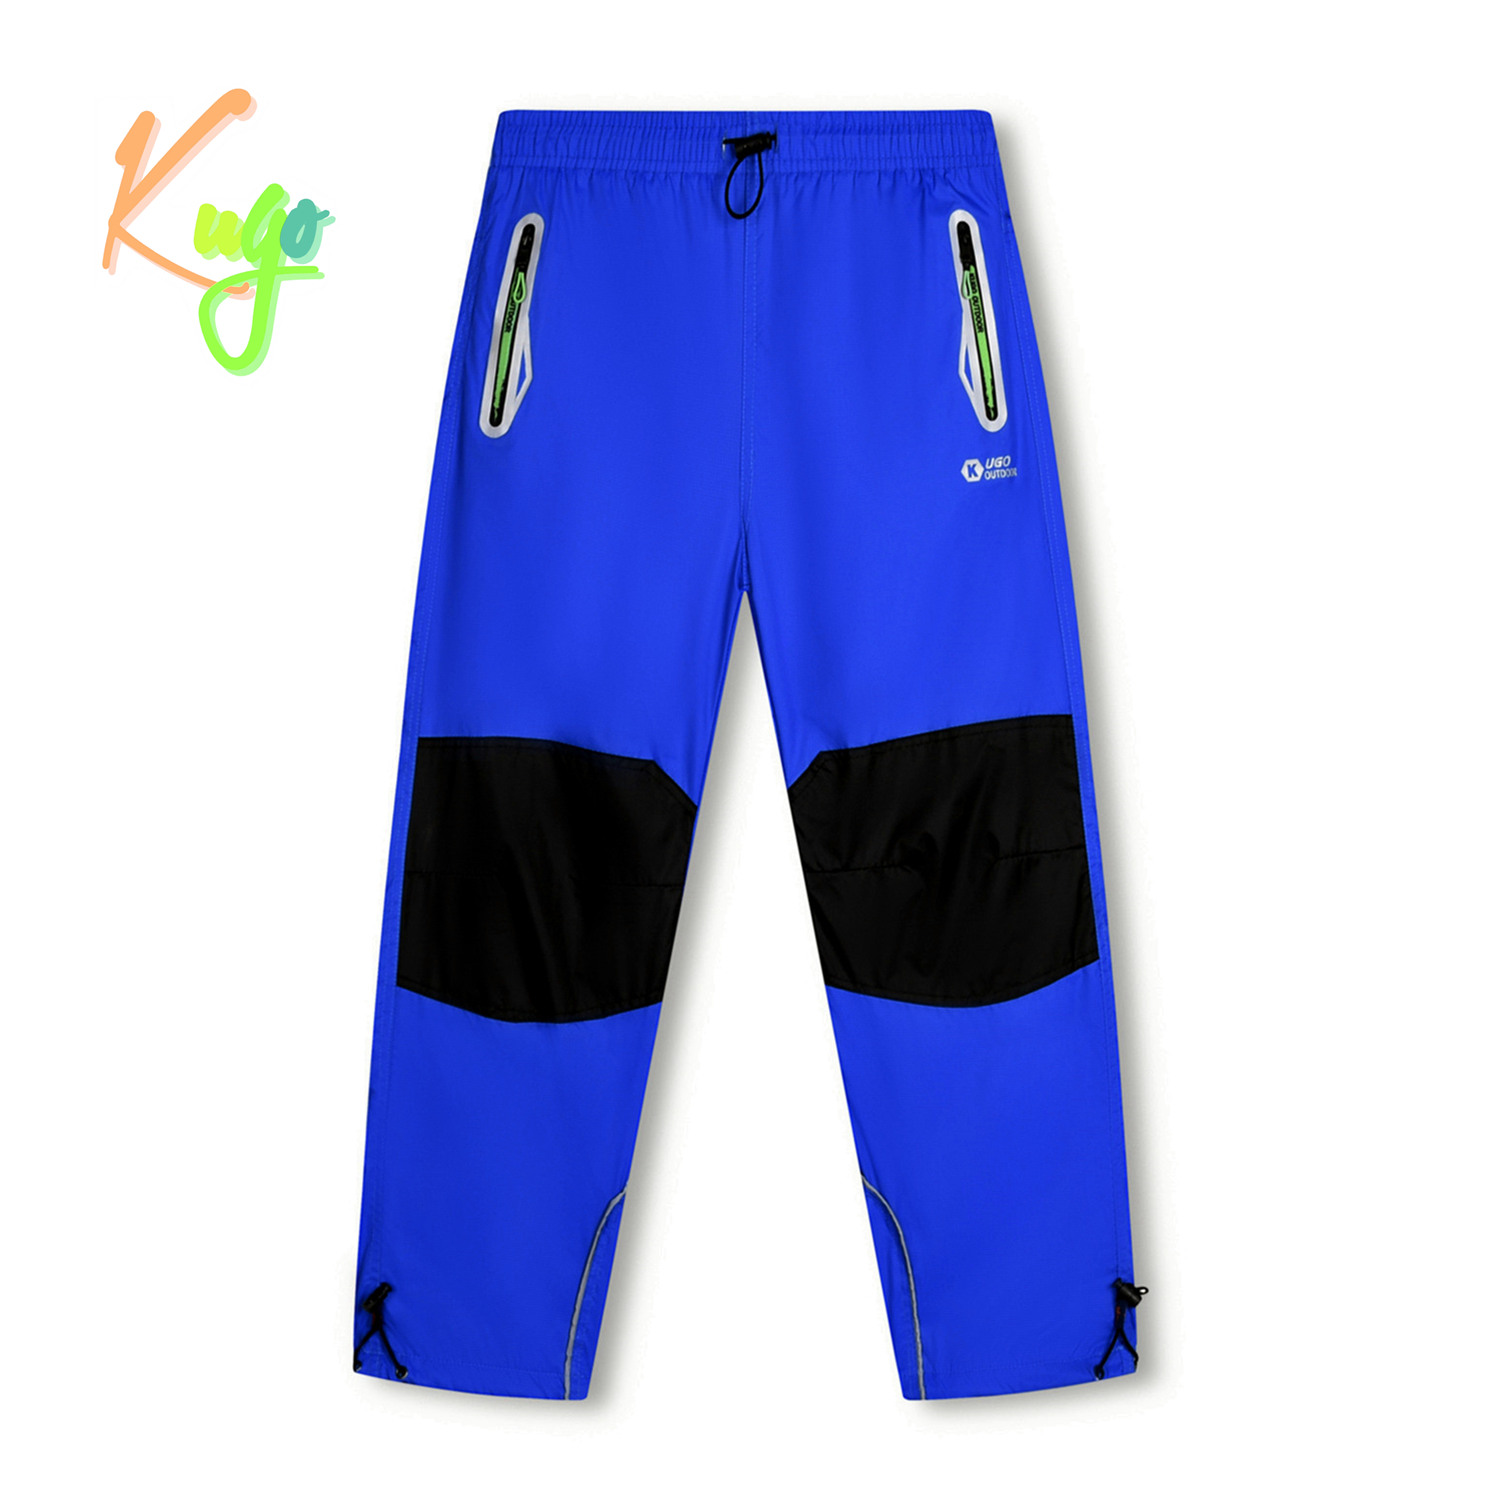 Chlapecké šusťákové kalhoty - KUGO SK7740, modrá Barva: Modrá, Velikost: 146